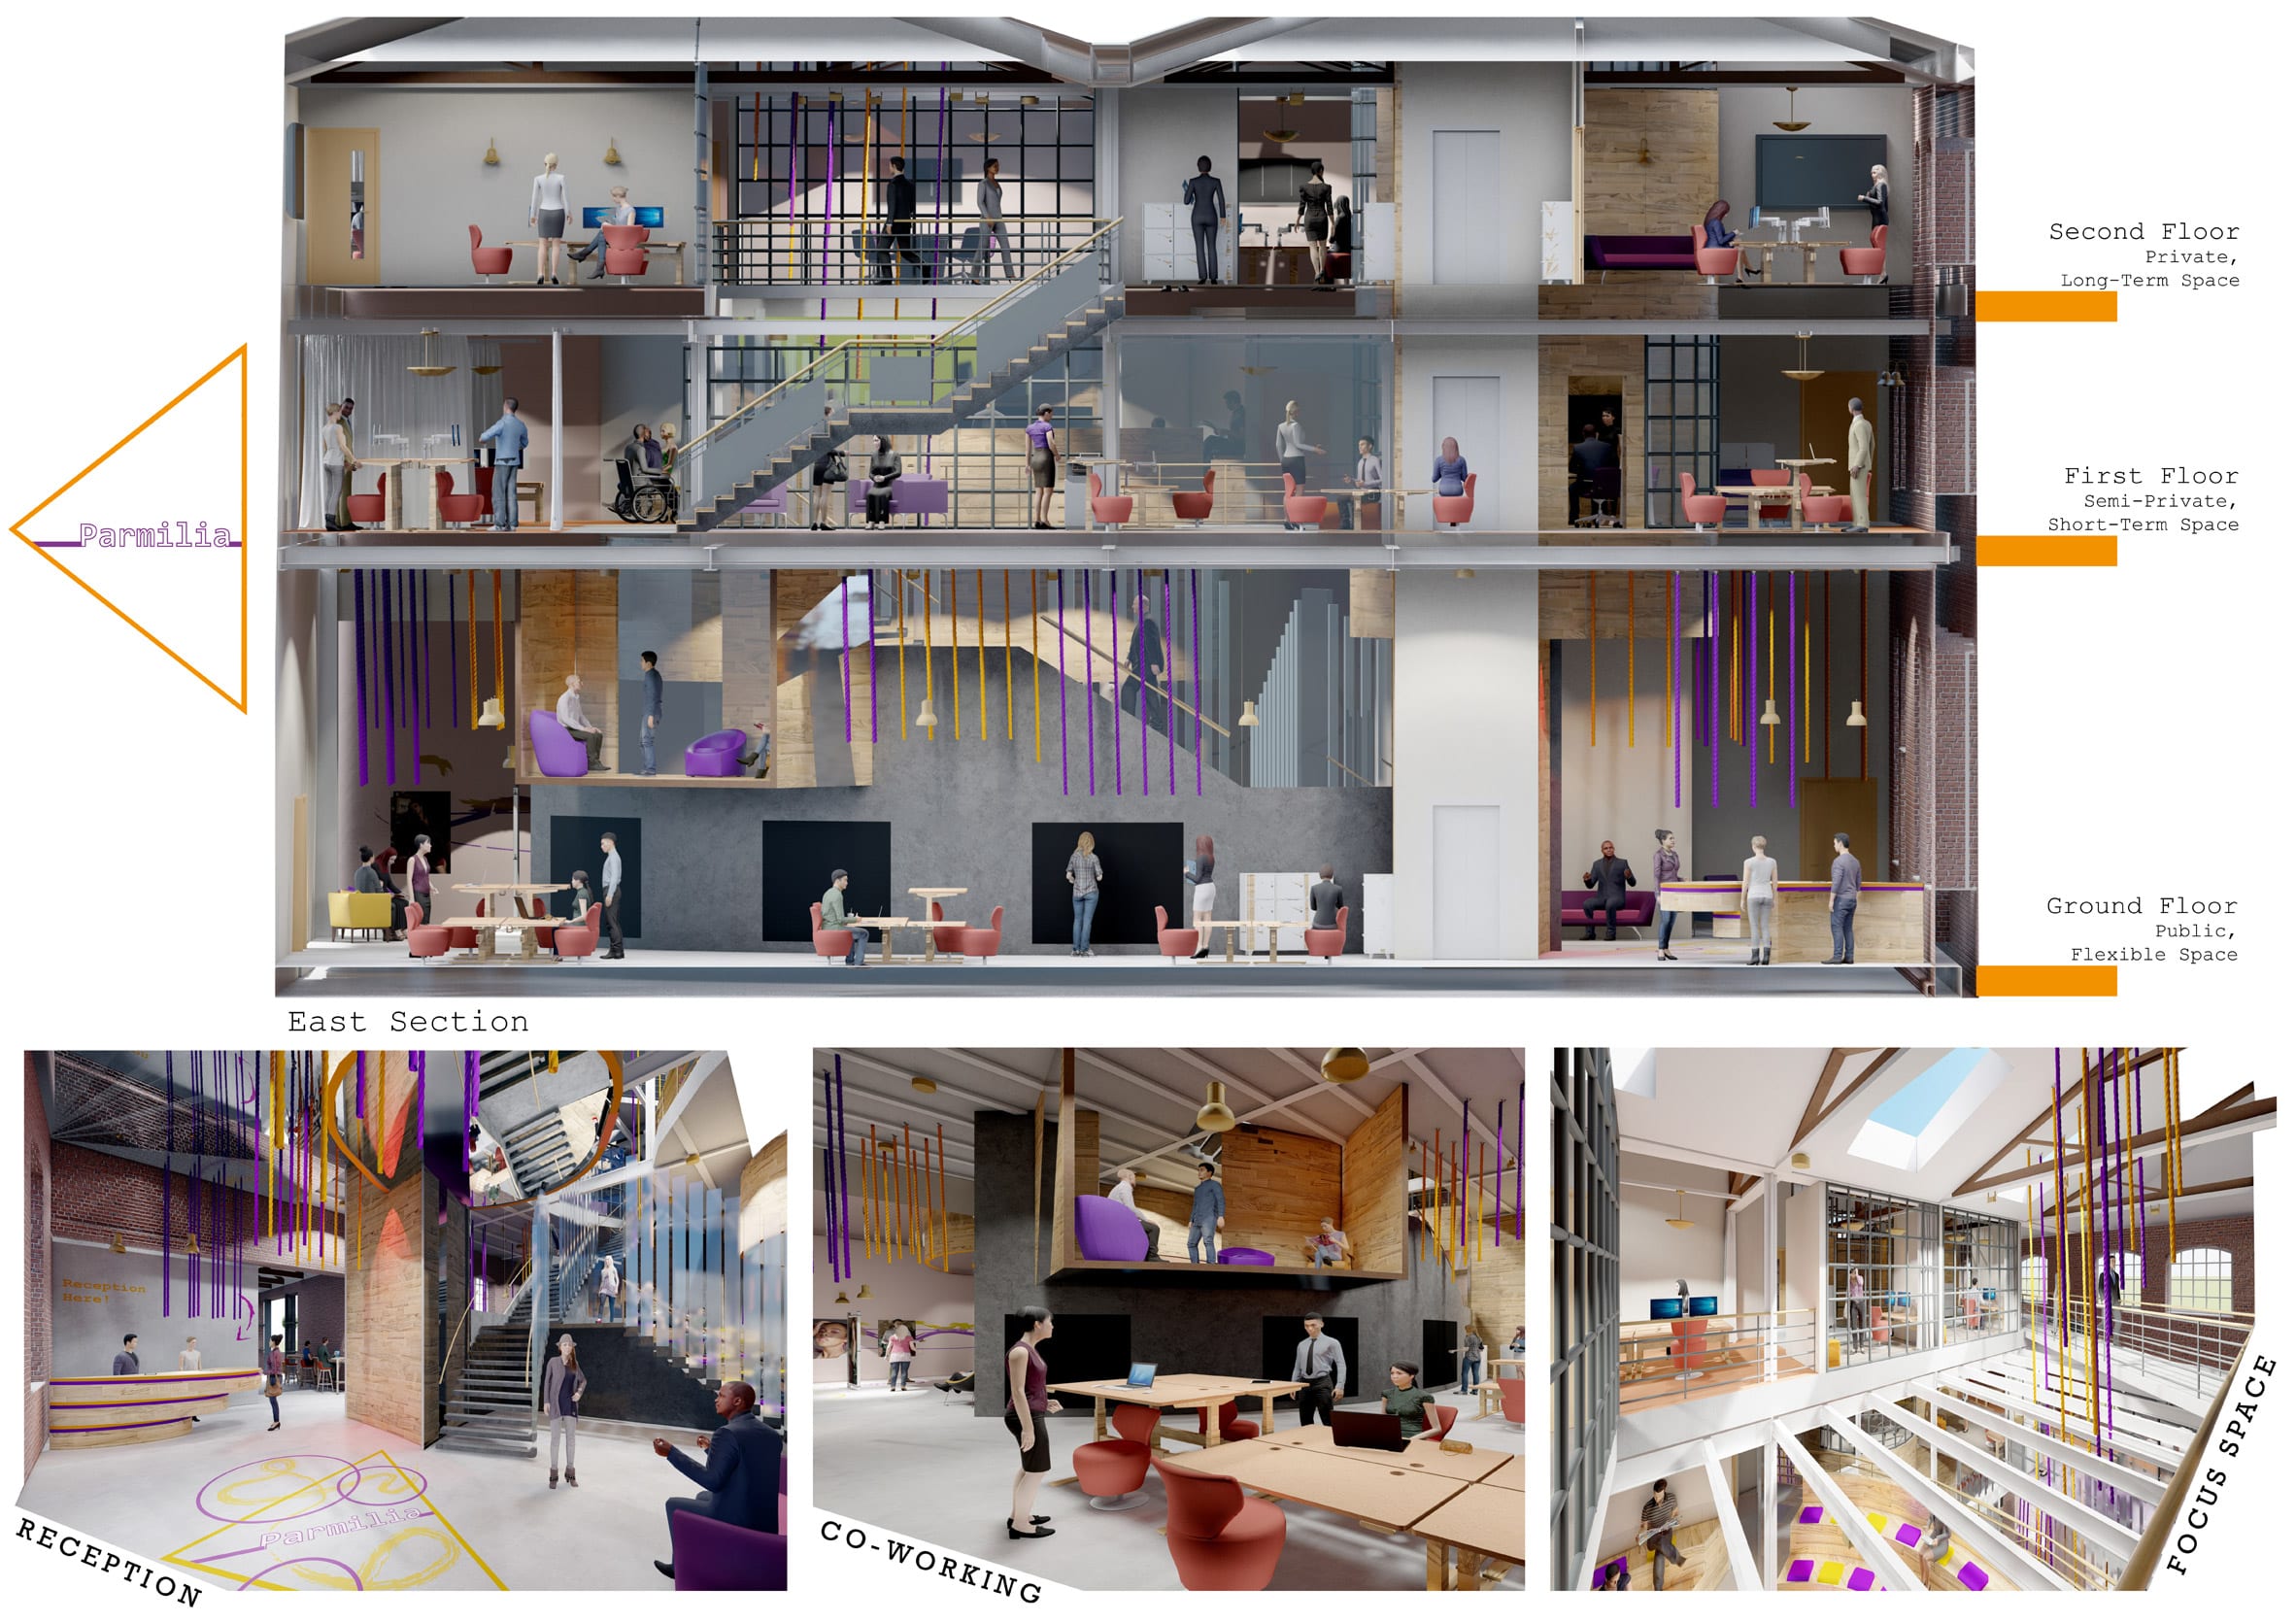 University of Huddersfield spotlights ten student interior design projects